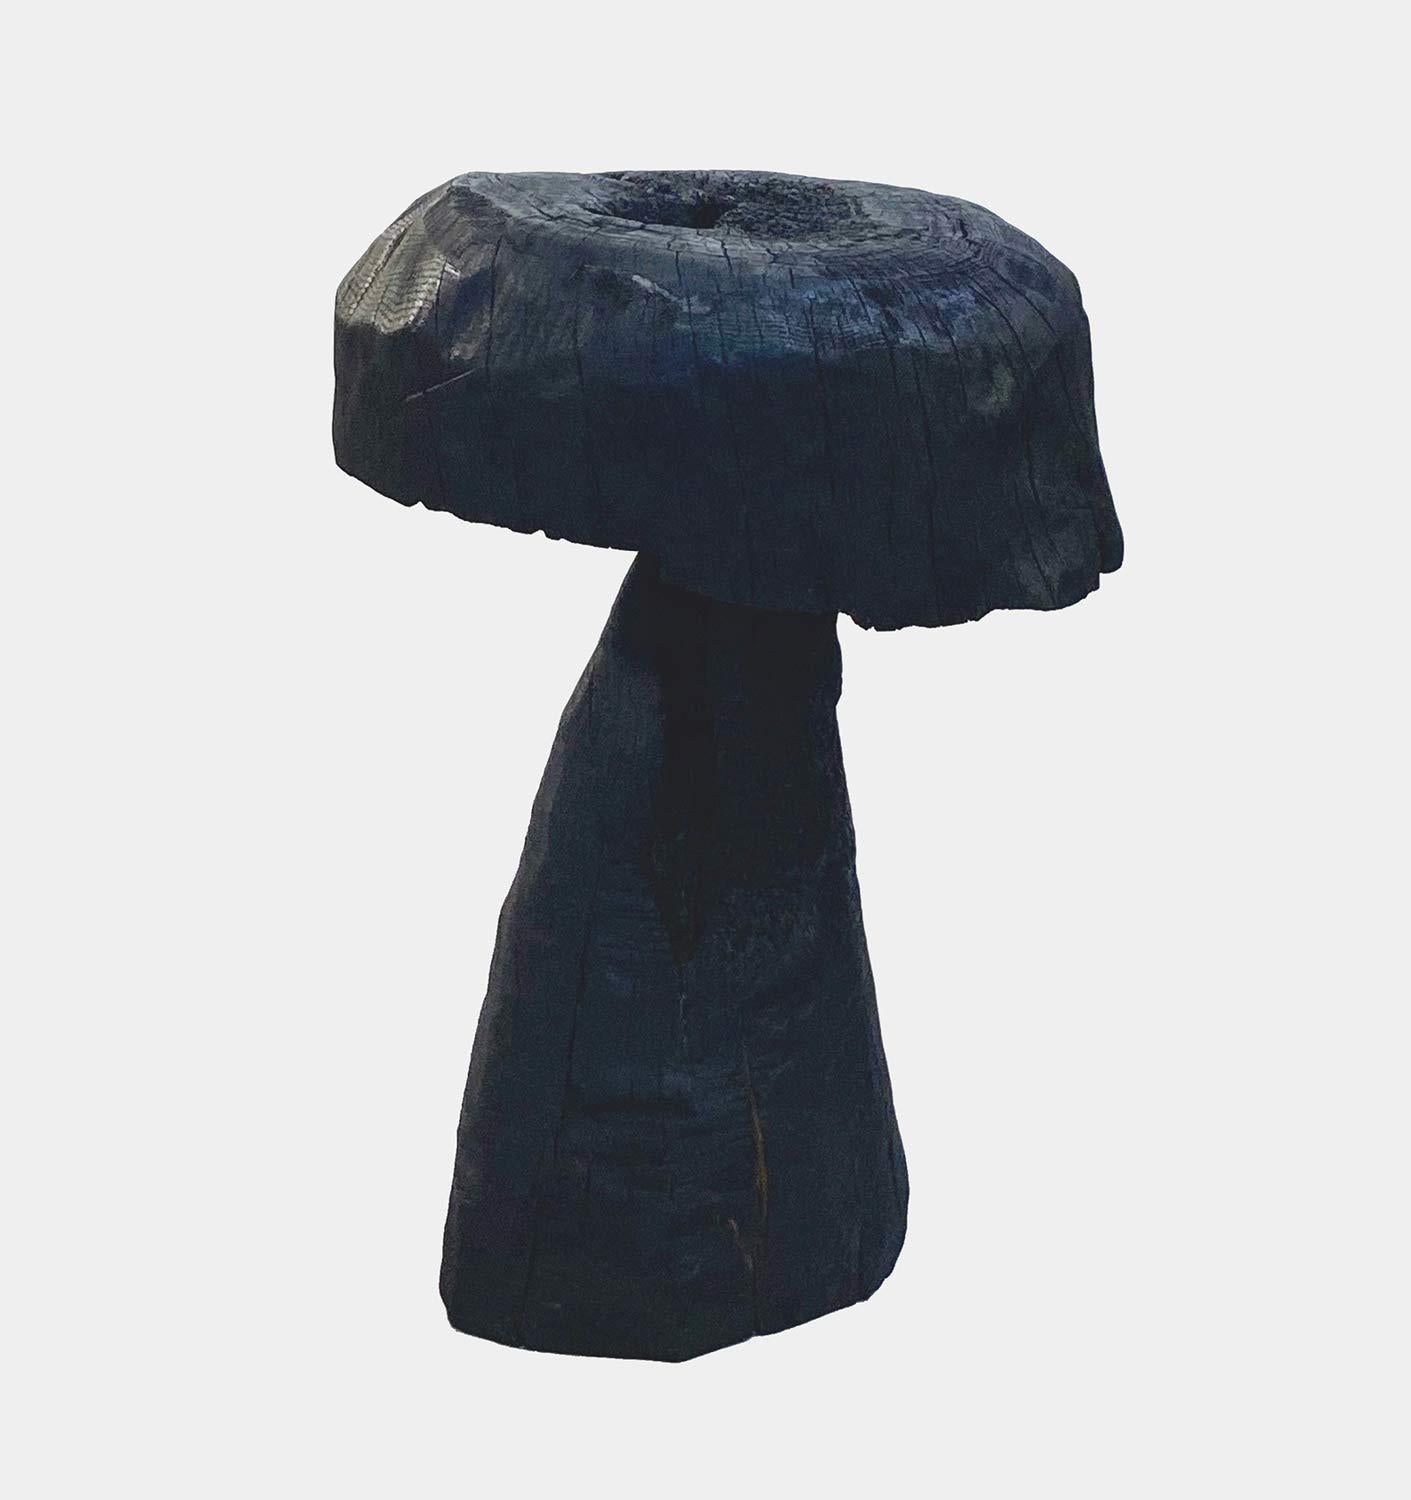 Jonathan Shlafer Abstract Sculpture - Mushroom #3, Amagansett, NY, 2021